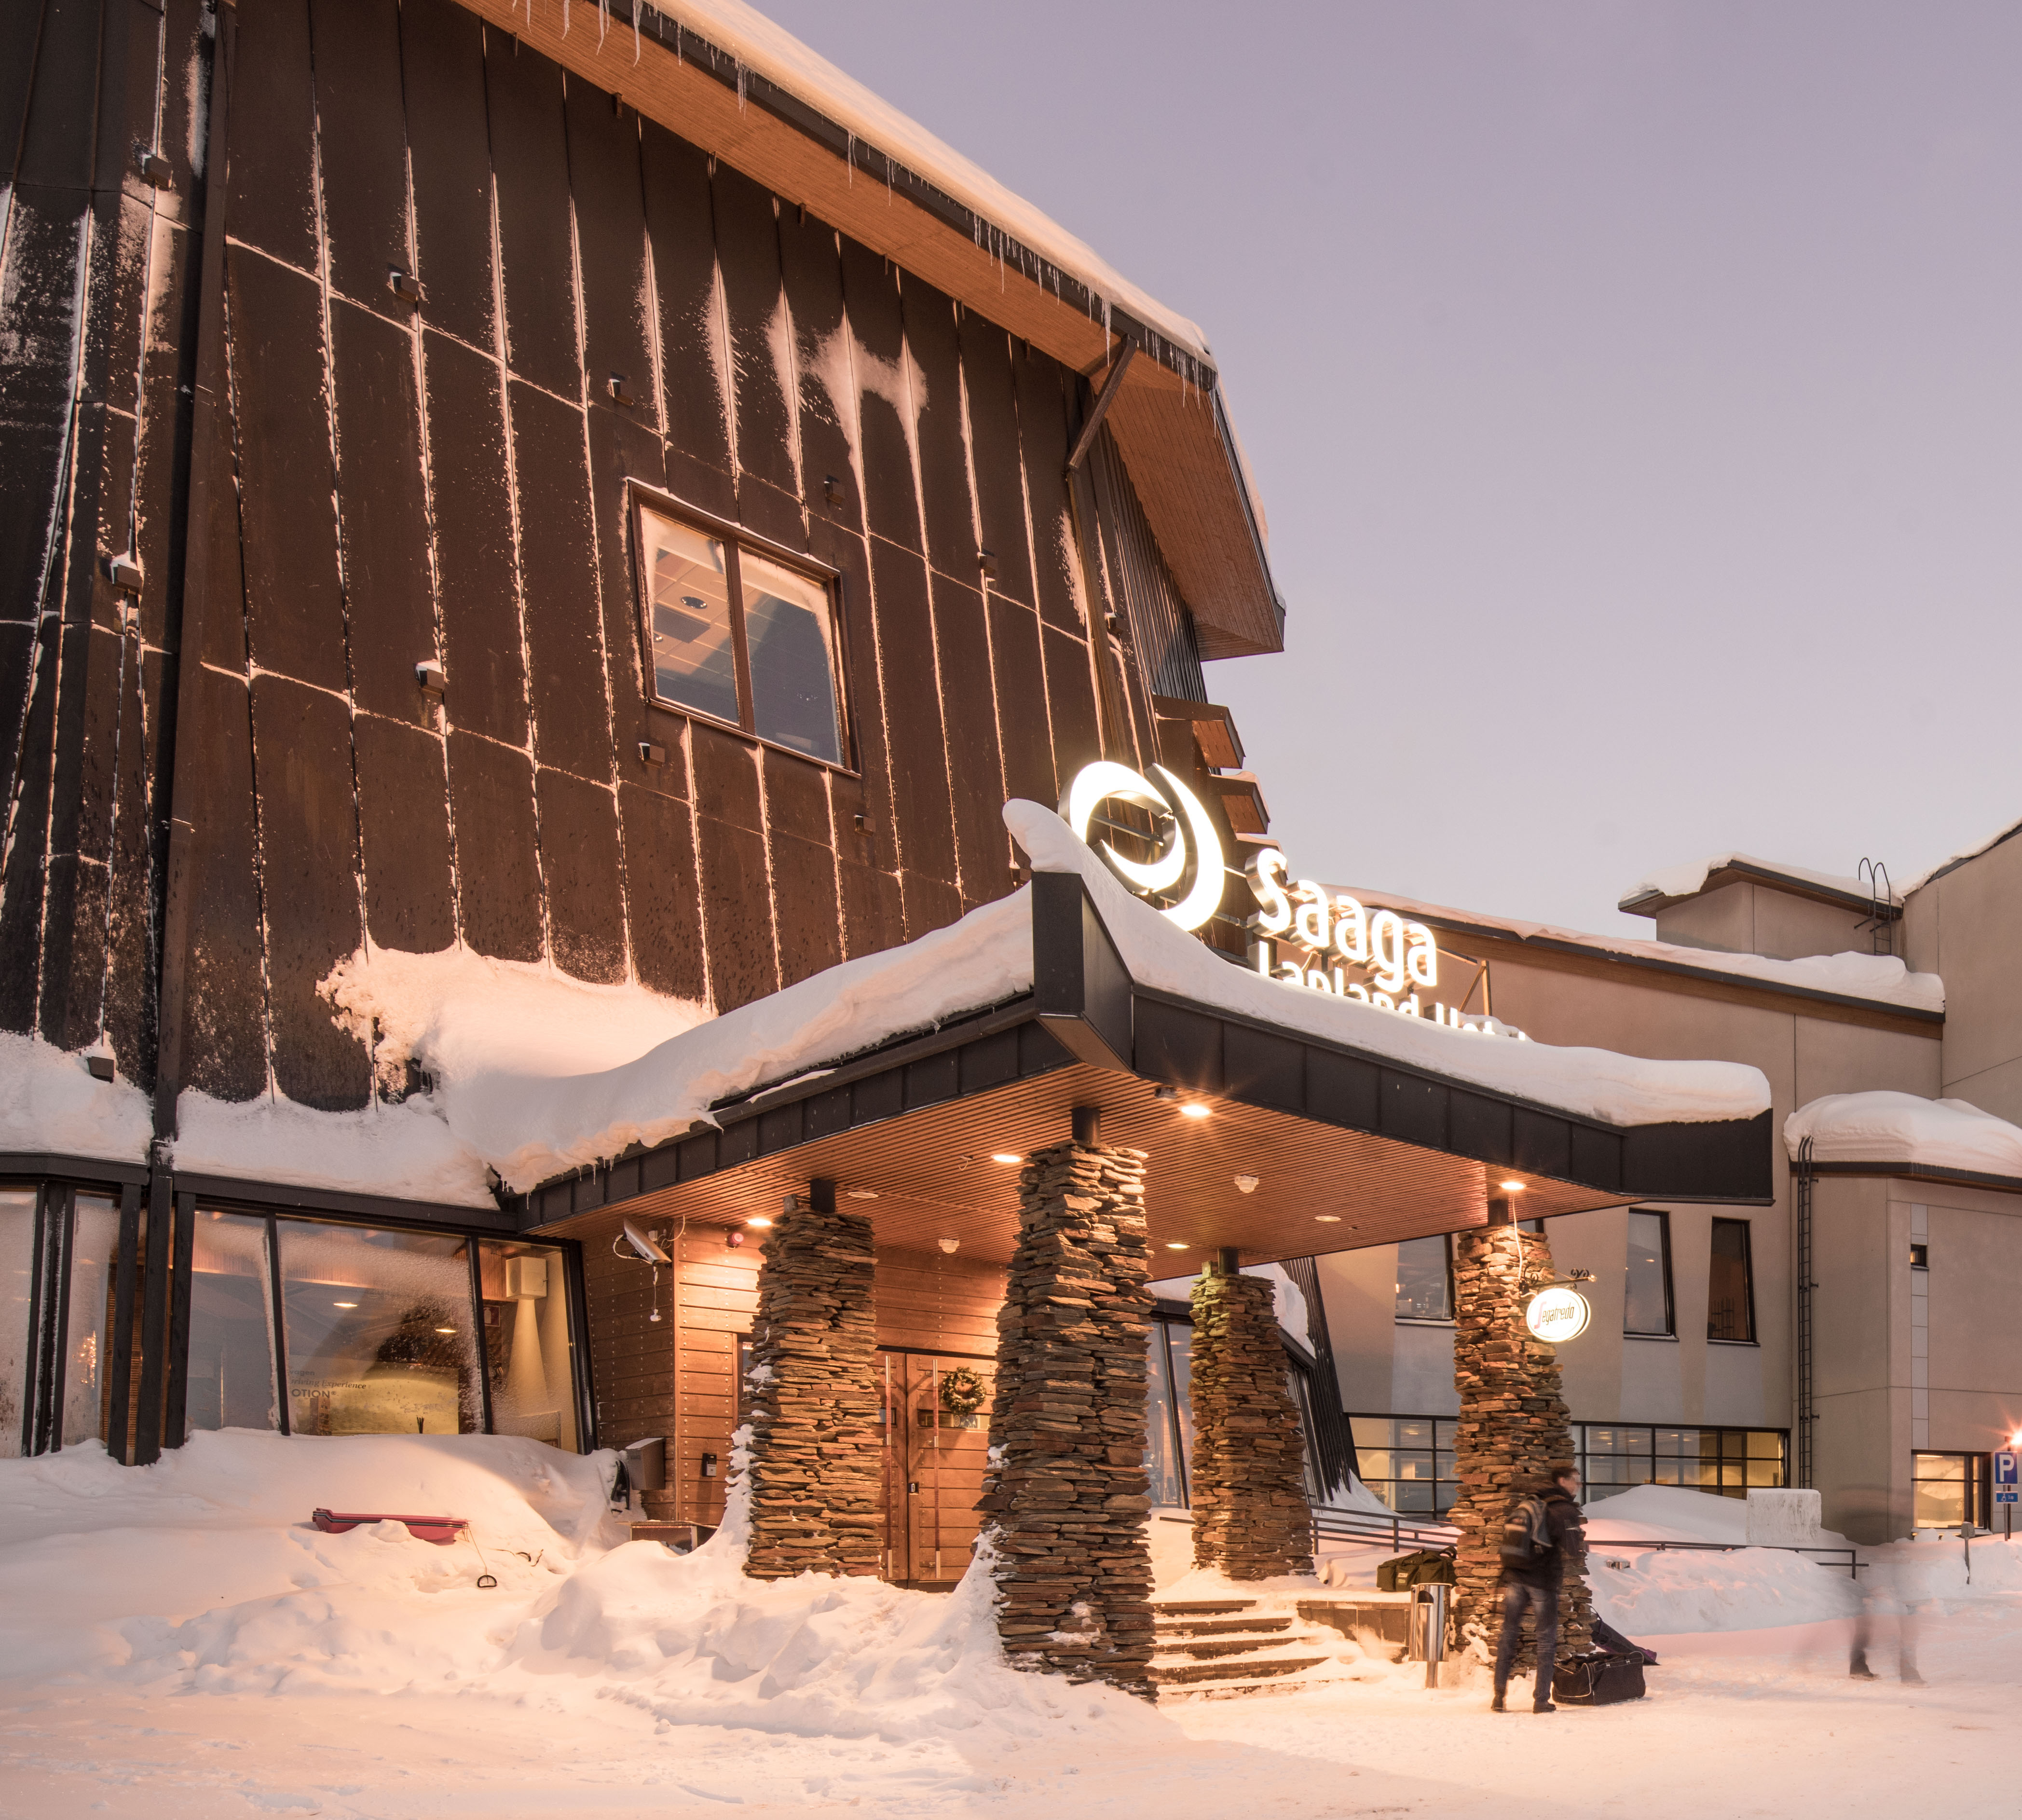 Lapland Hotel Saaga  | Lapland Holidays from Ireland with Sunway